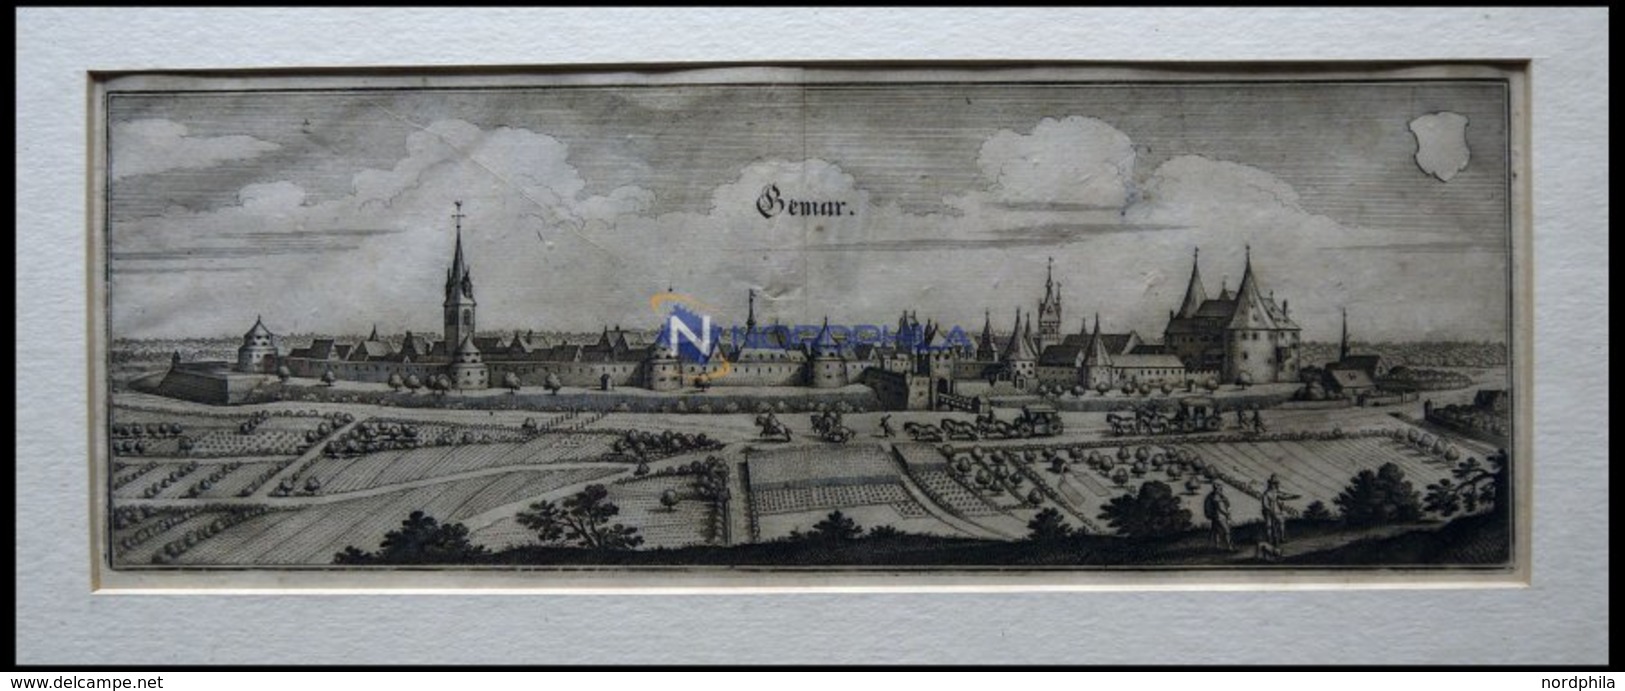 GEMAR, Gesamtansicht, Kupferstich Von Merian Um 1645 - Lithographien